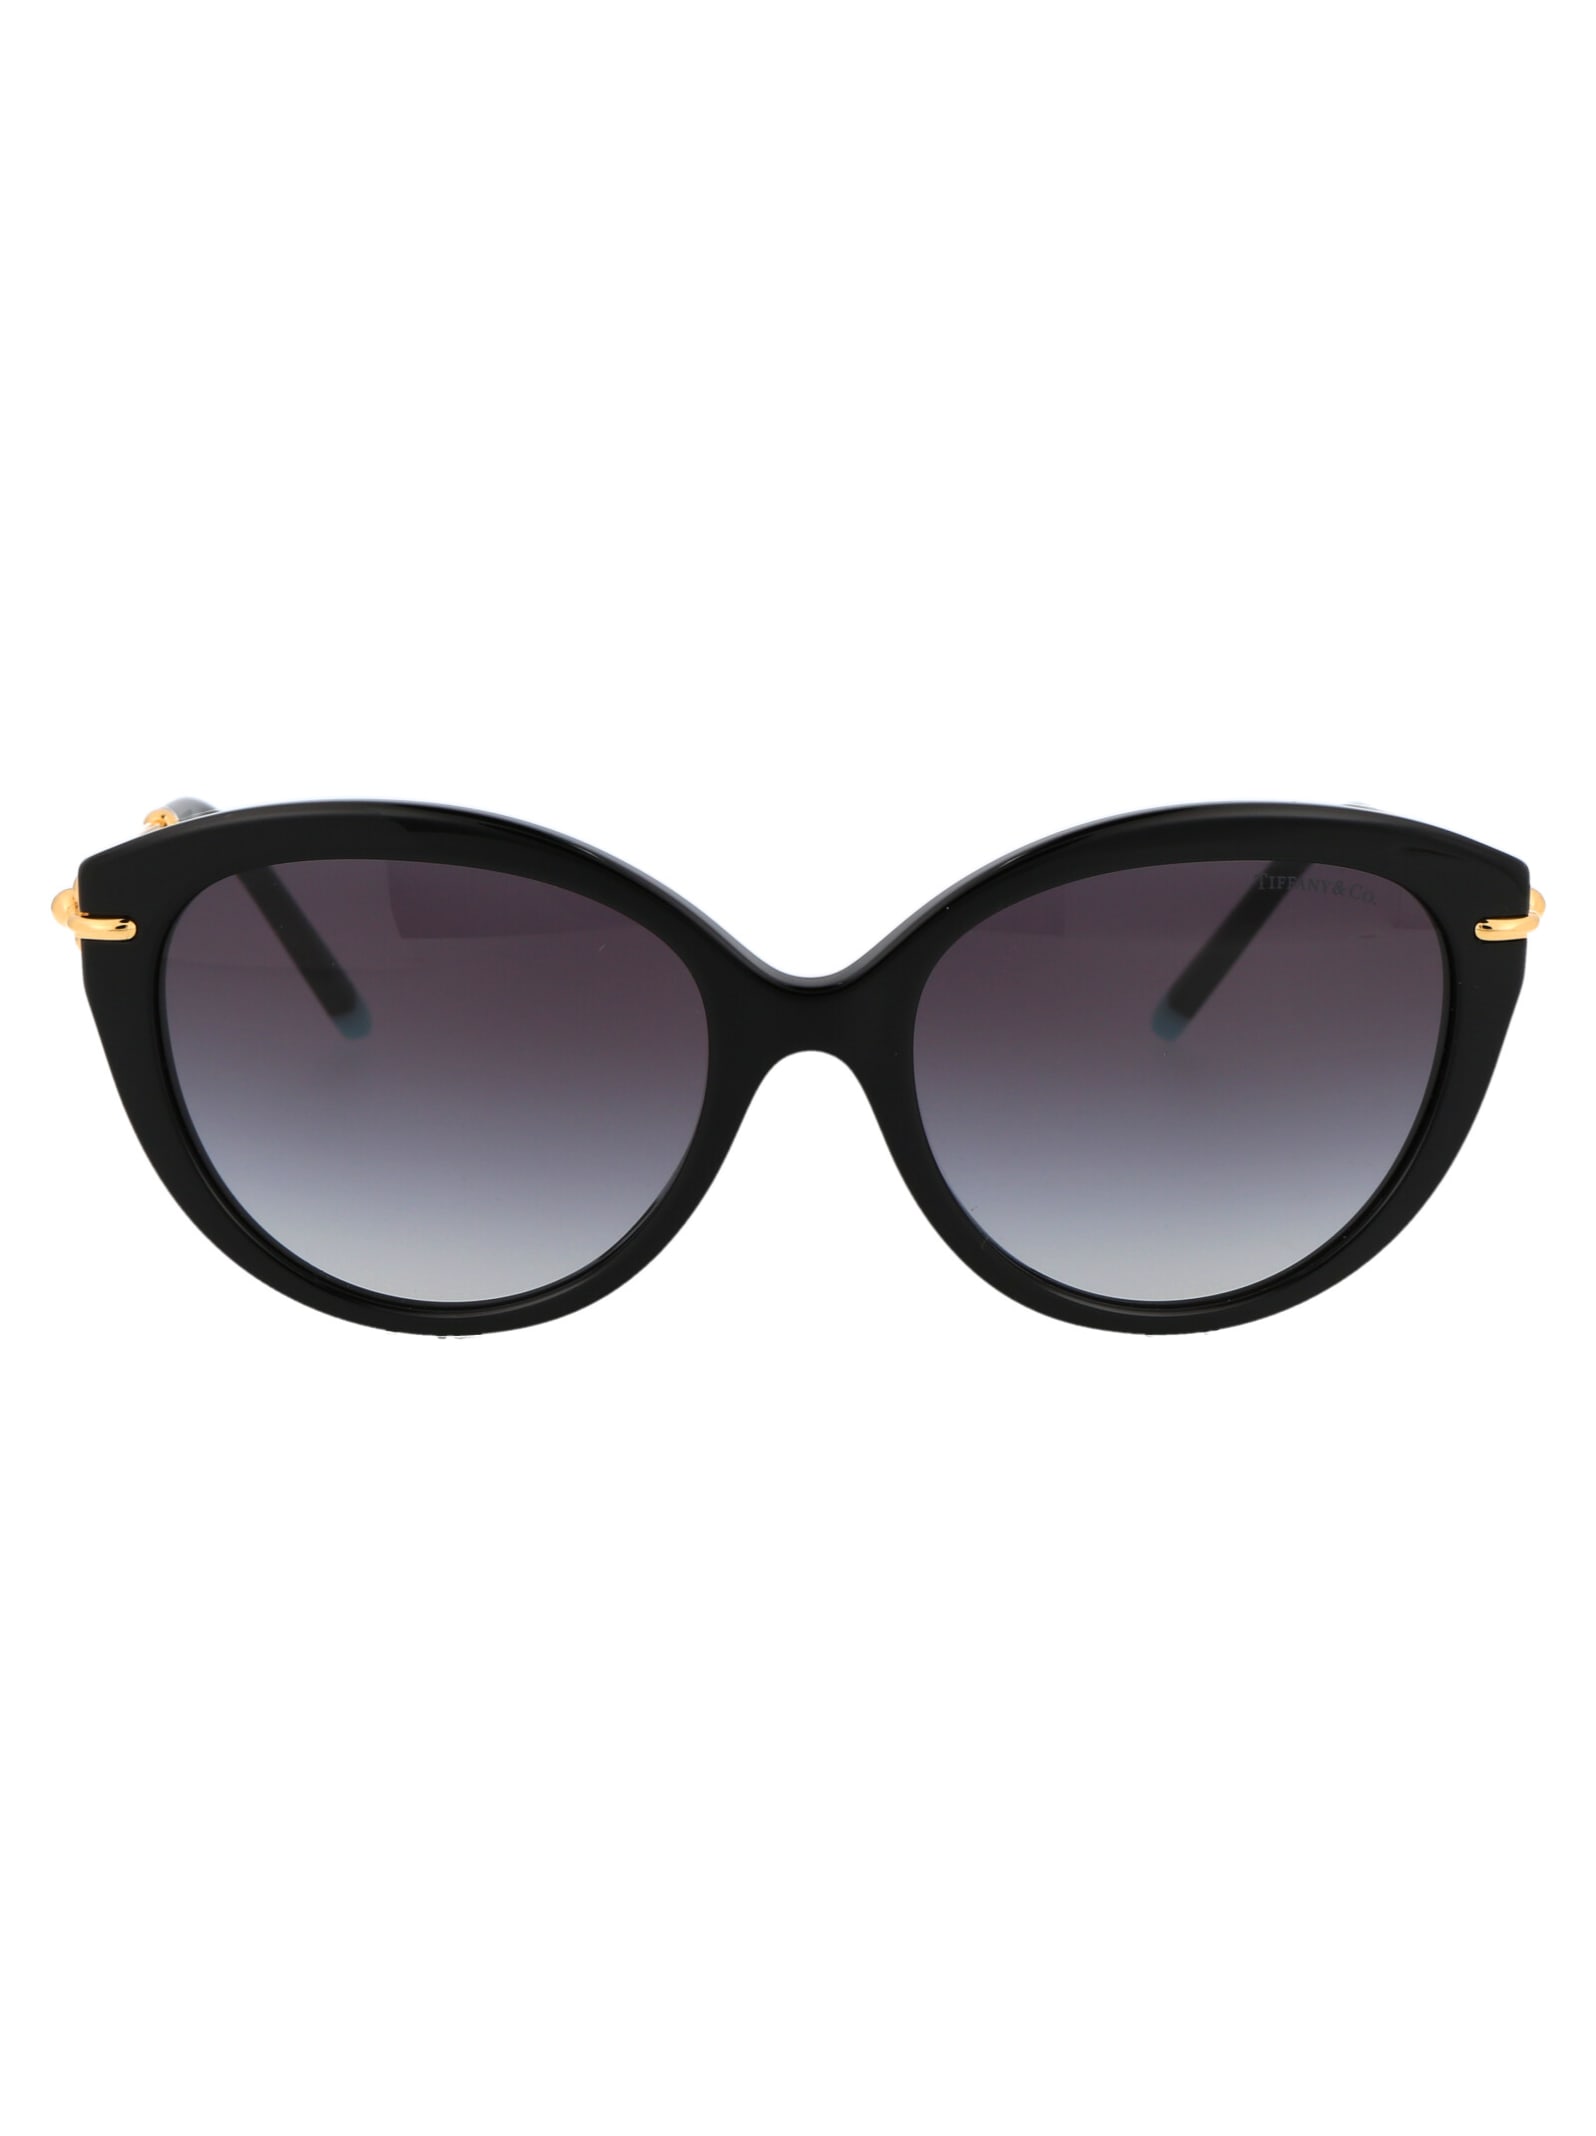 Tiffany & Co. 0tf4187 Sunglasses